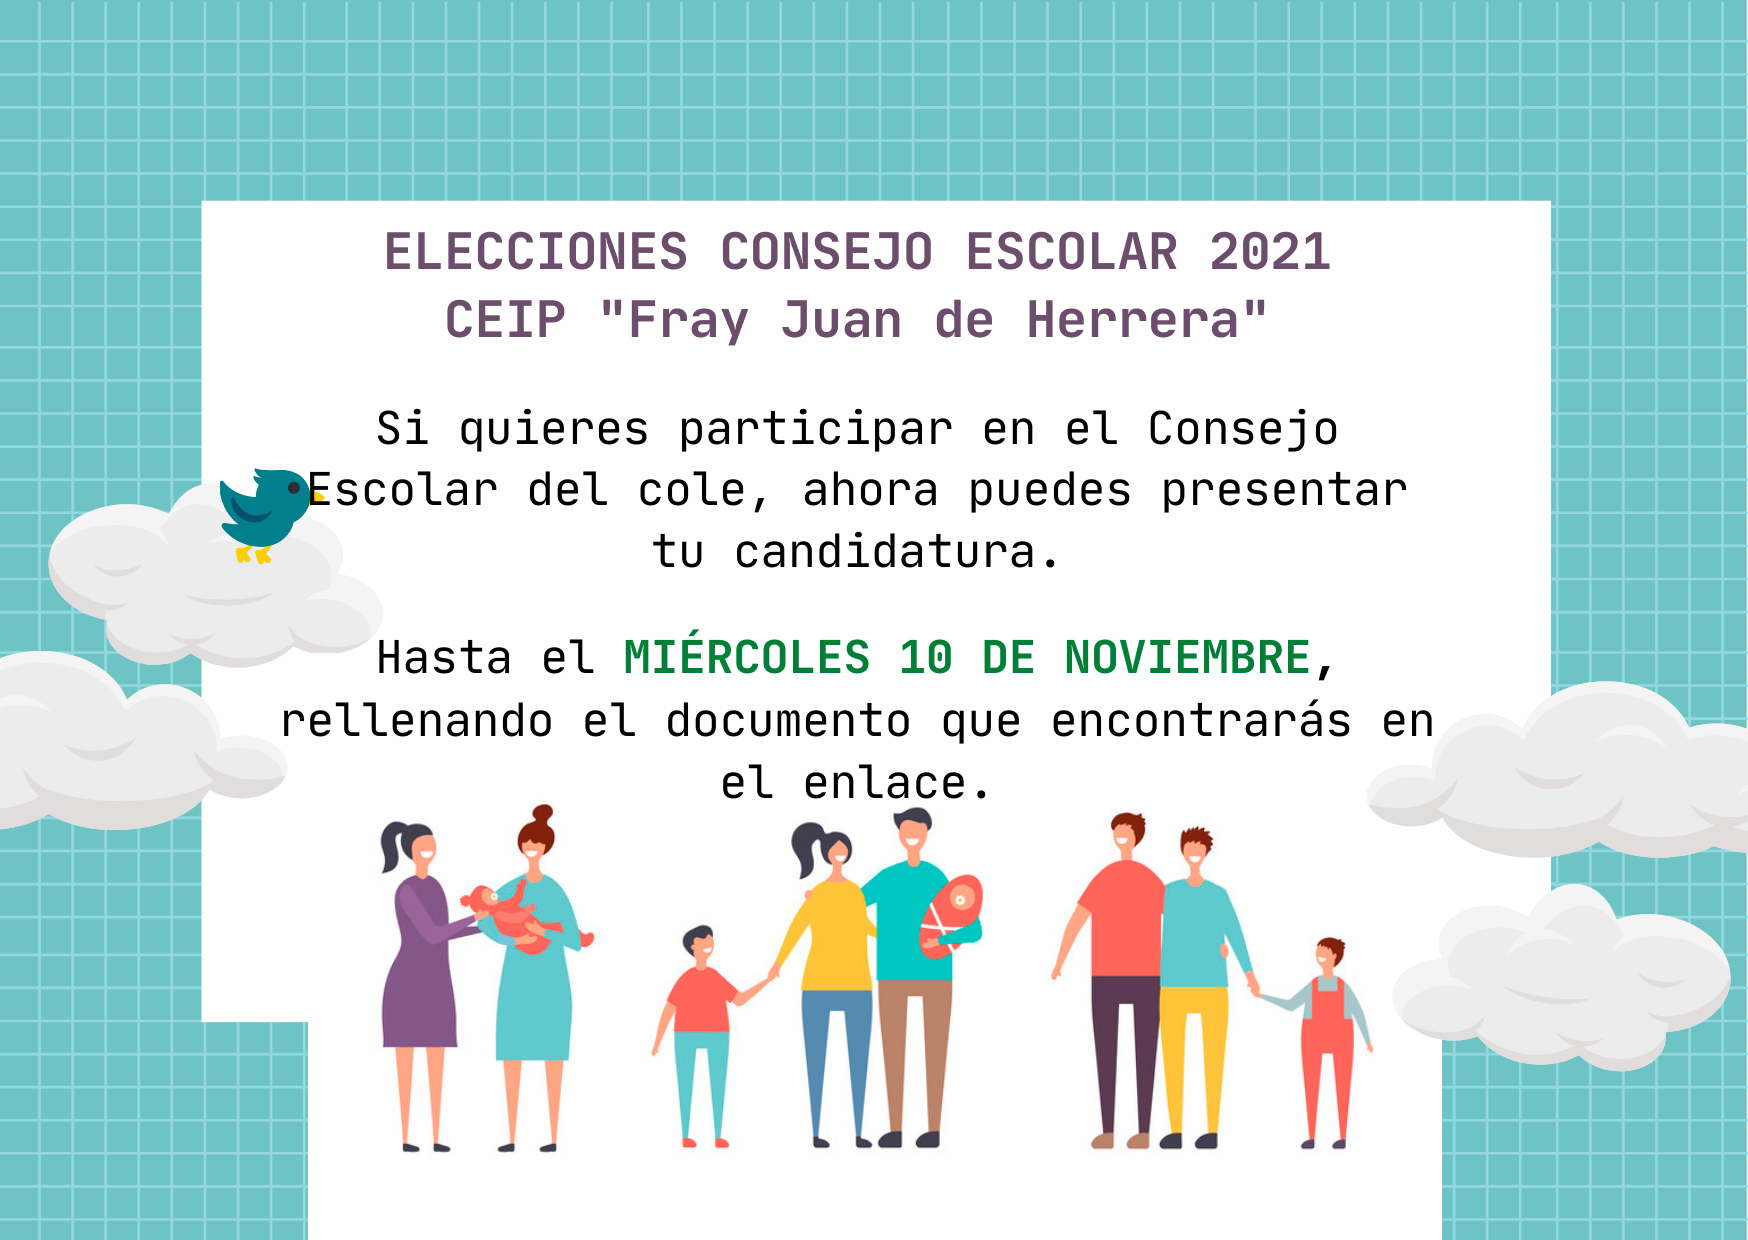 ELECCIONES CONSEJO ESCOLAR 2021